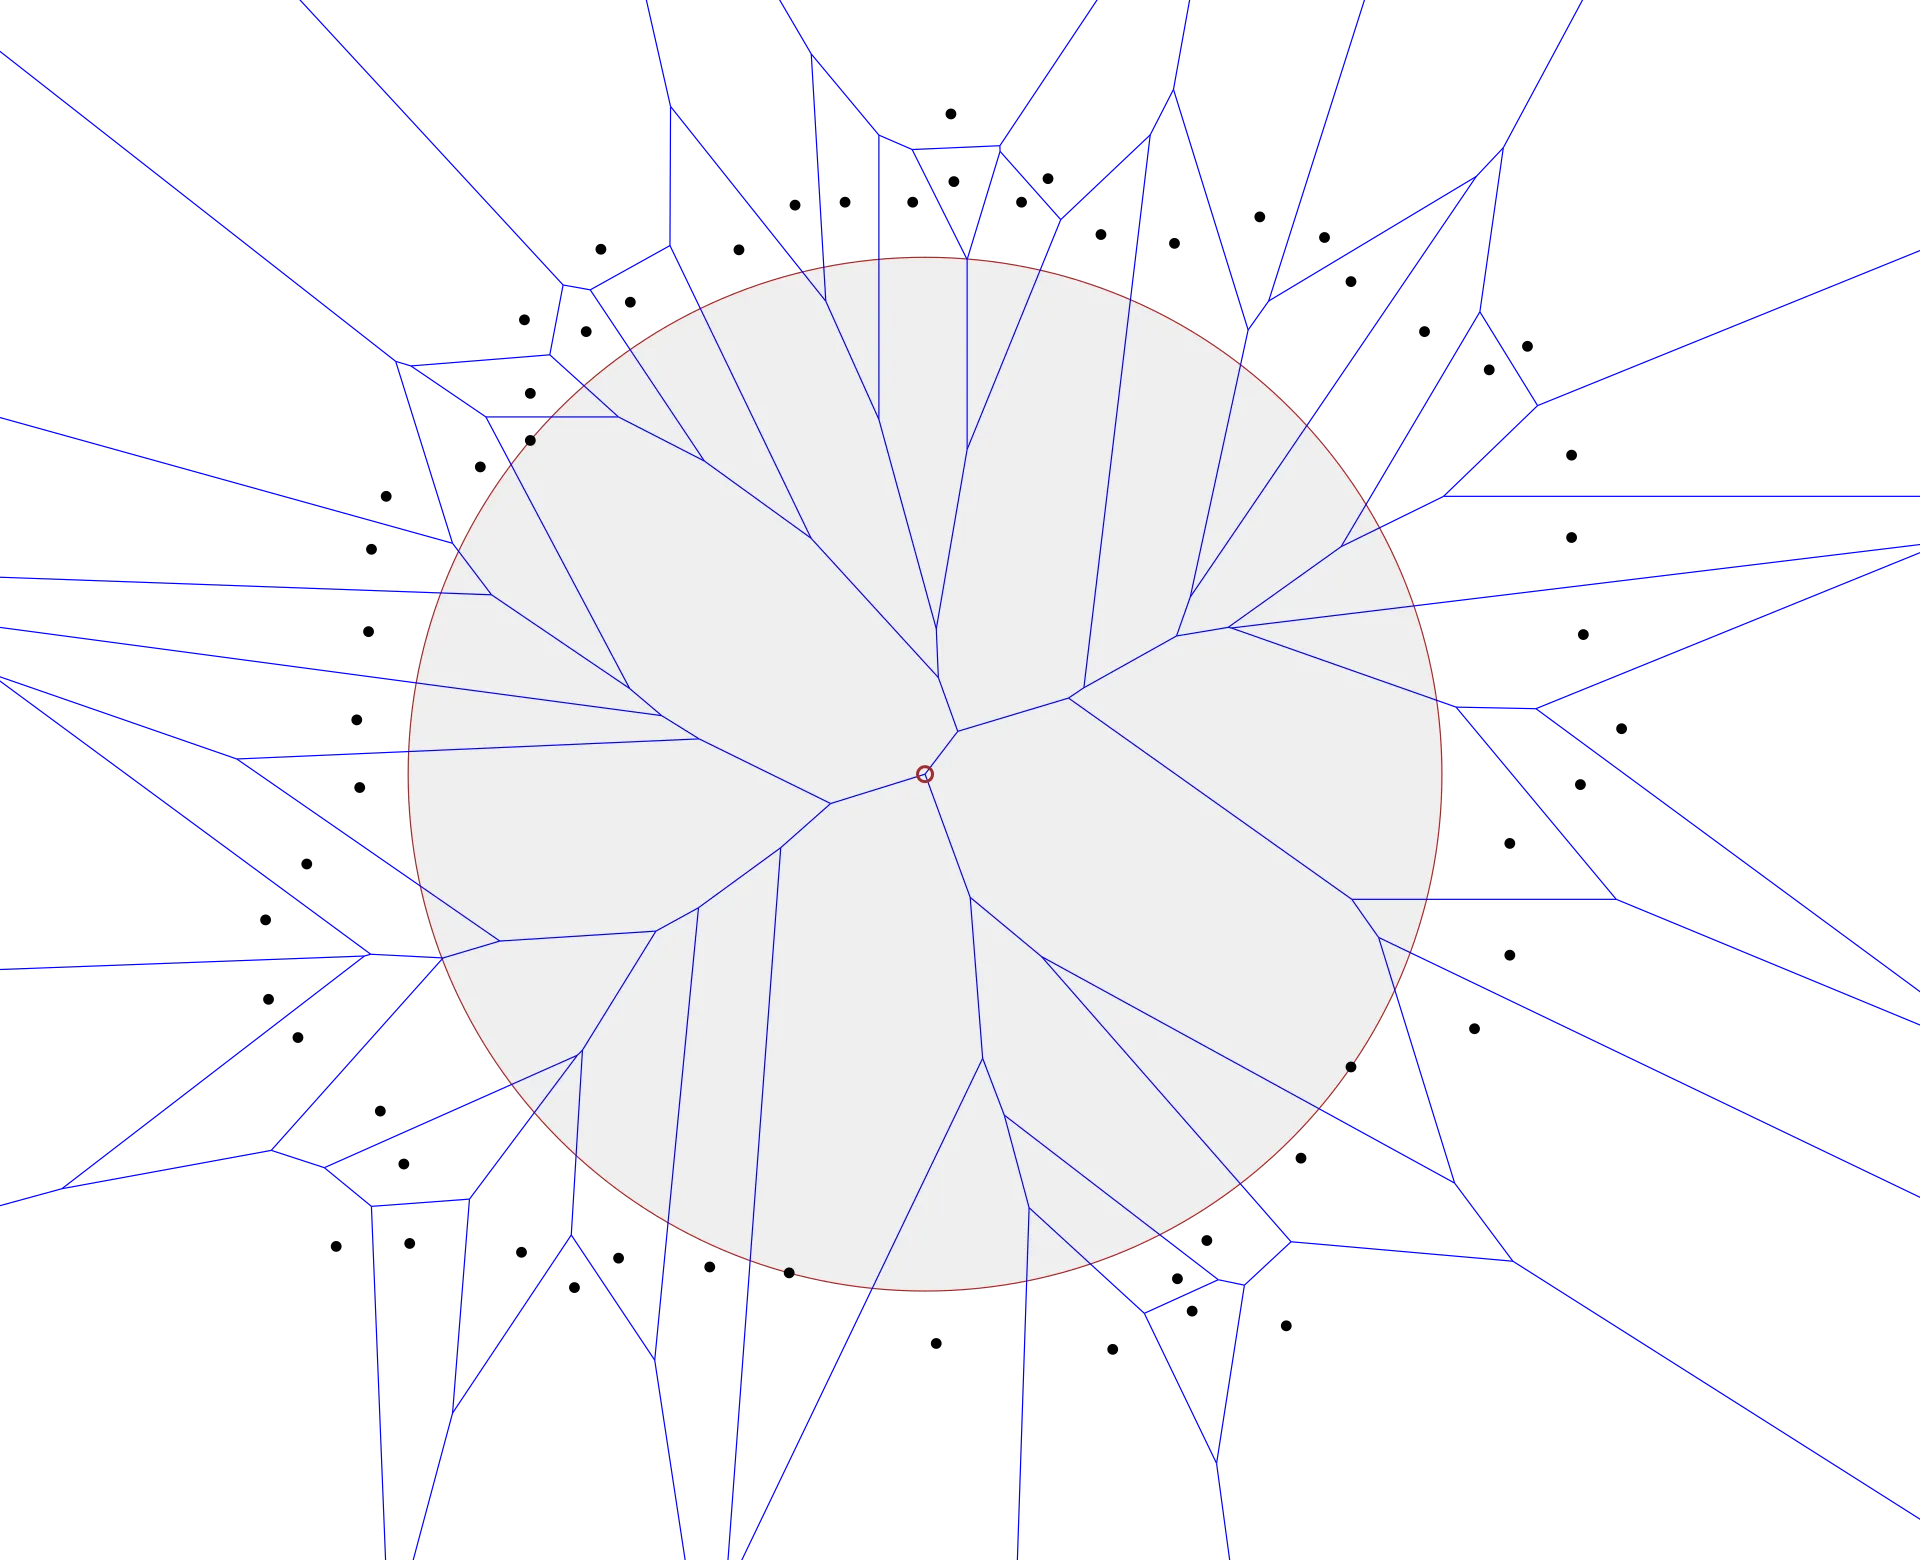 Voronoi diagram of points